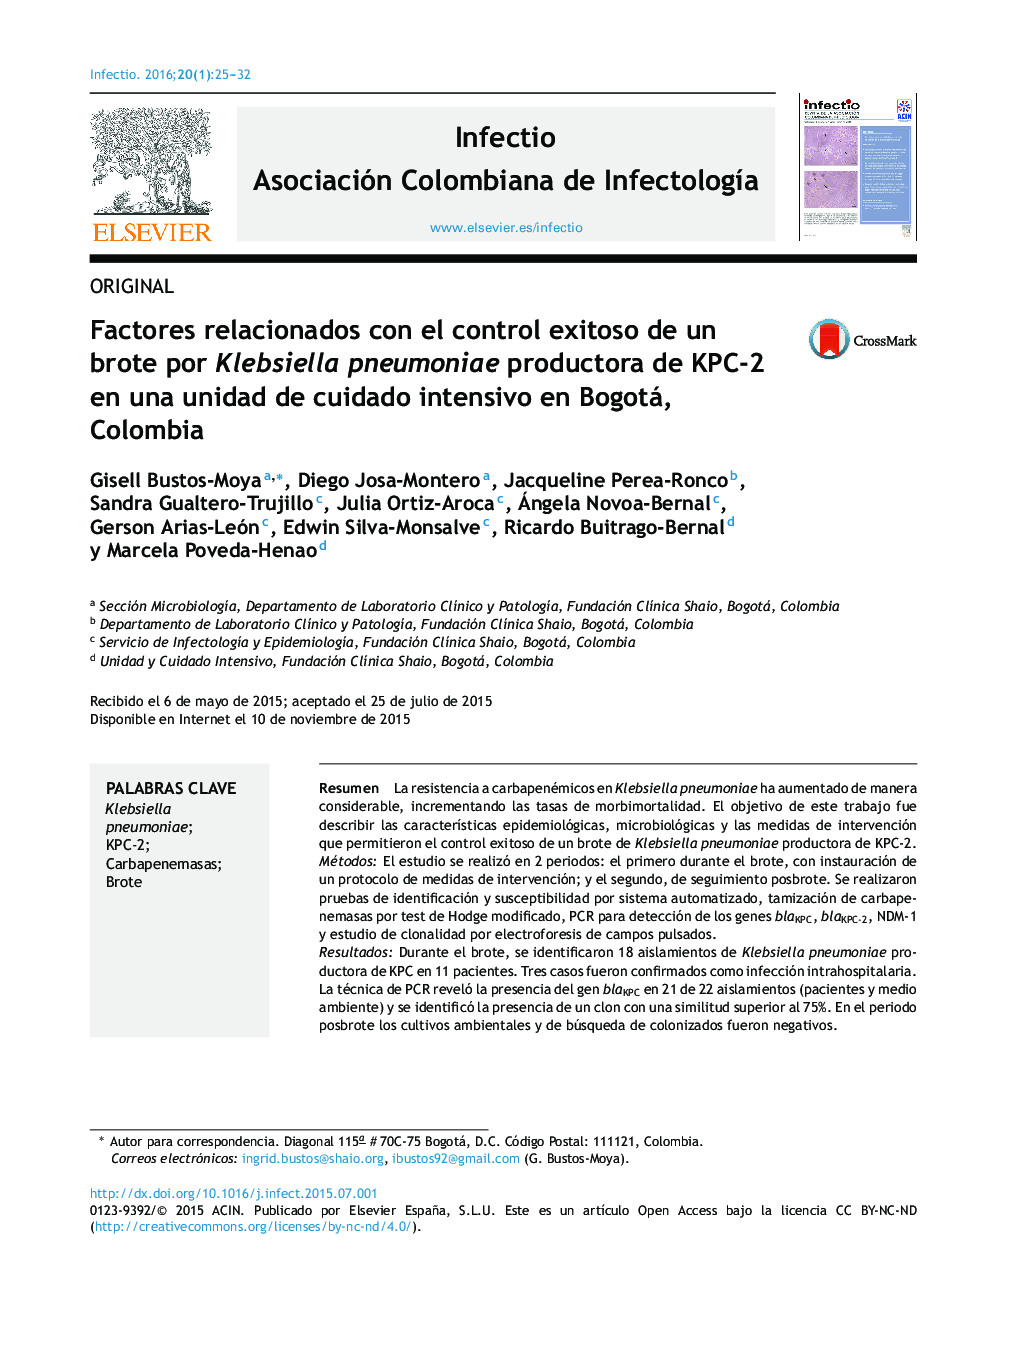 Factores relacionados con el control exitoso de un brote por Klebsiella pneumoniae productora de KPC-2 en una unidad de cuidado intensivo en Bogotá, Colombia